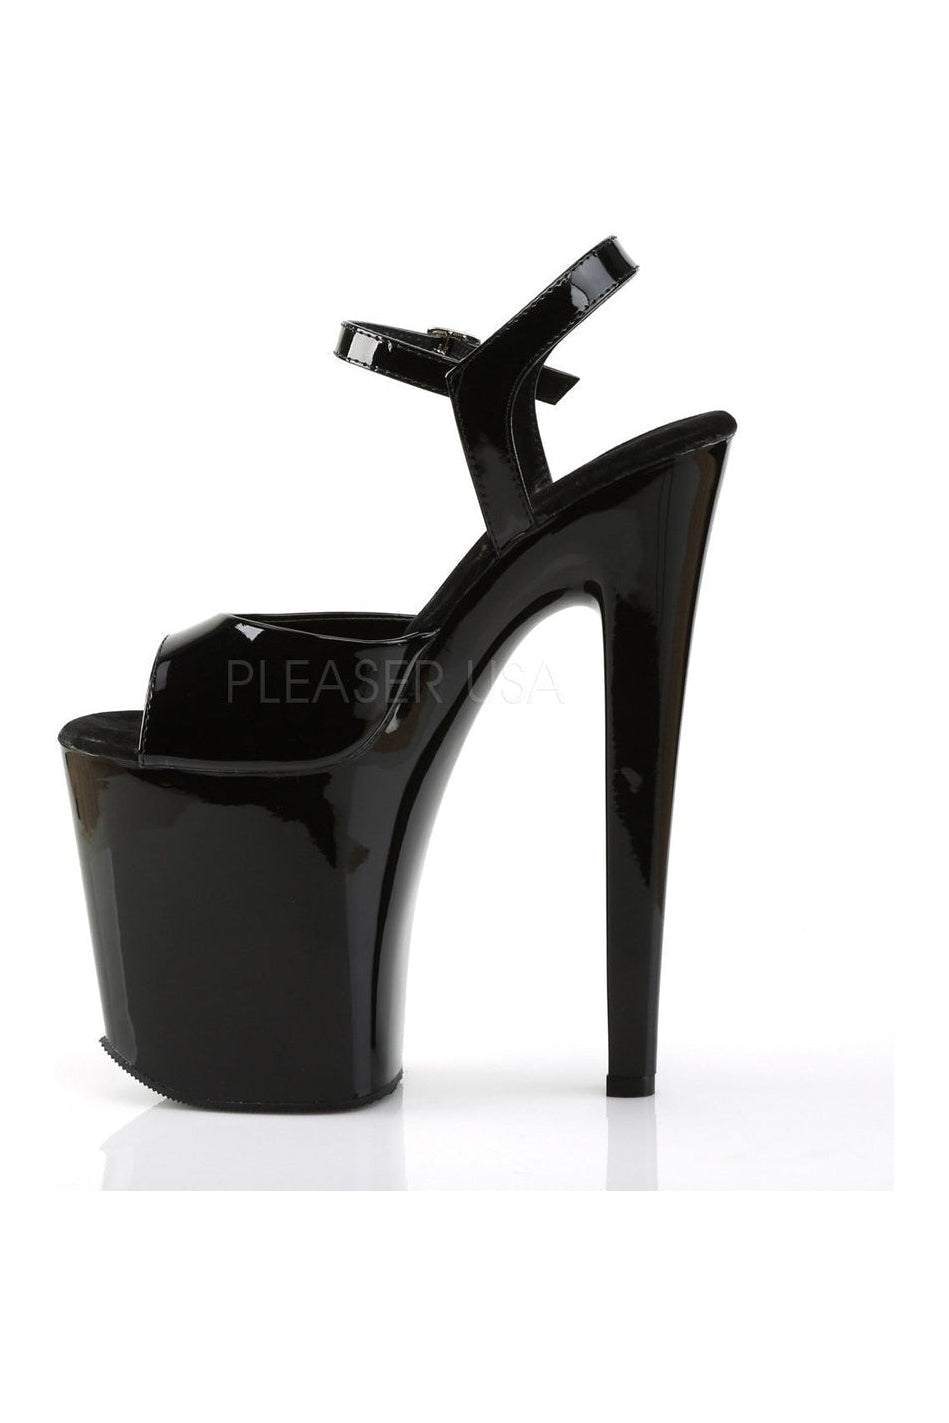 XTREME-809 Platform Sandal | Black Patent-Pleaser-Sandals-SEXYSHOES.COM